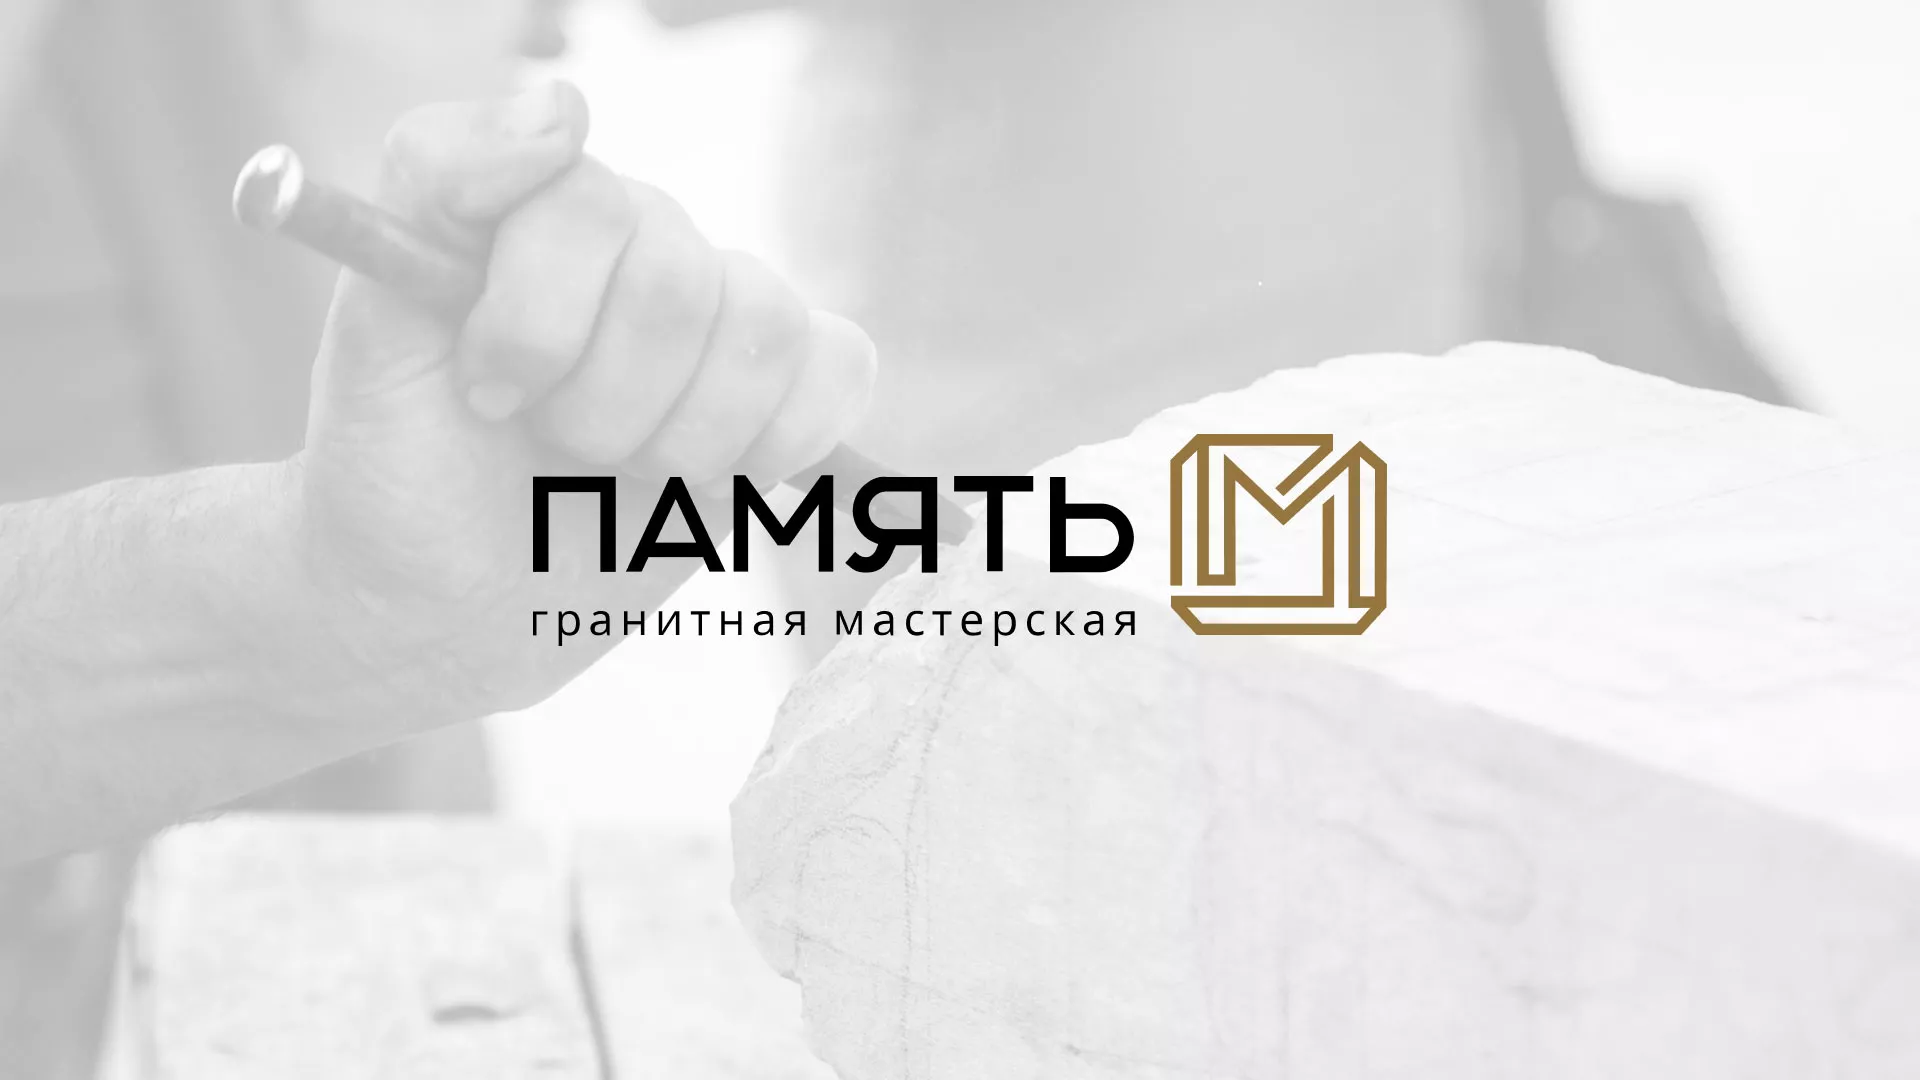 Разработка логотипа и сайта компании «Память-М» в Тольятти